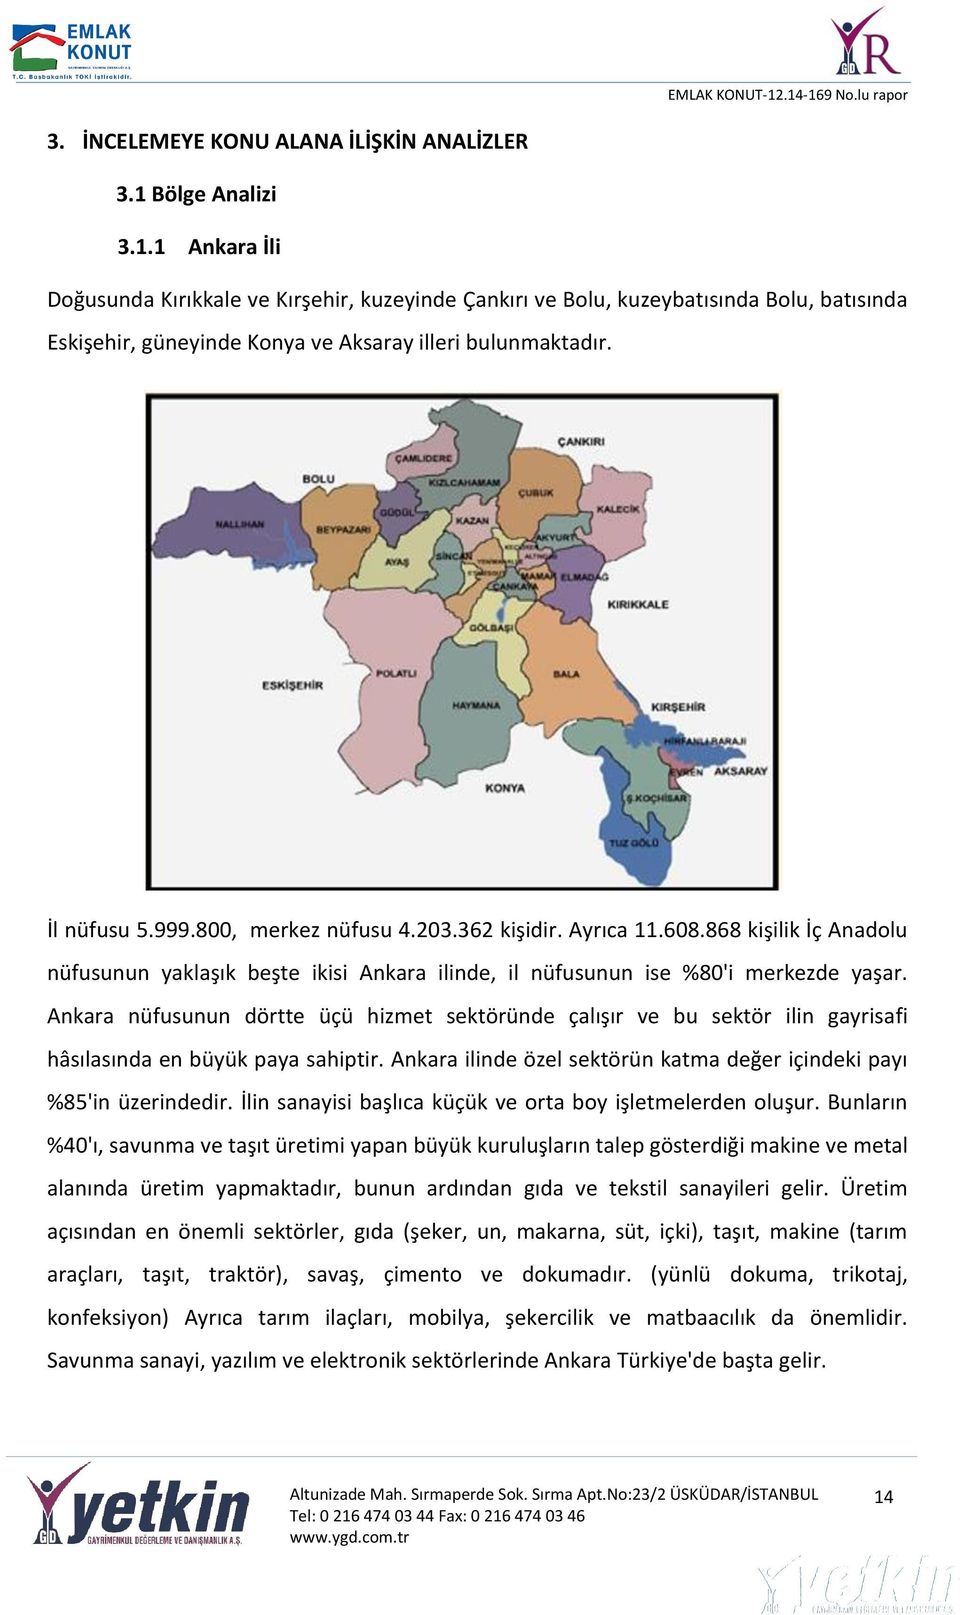 800, merkez nüfusu 4.203.362 kişidir. Ayrıca 11.608.868 kişilik İç Anadolu nüfusunun yaklaşık beşte ikisi Ankara ilinde, il nüfusunun ise %80'i merkezde yaşar.